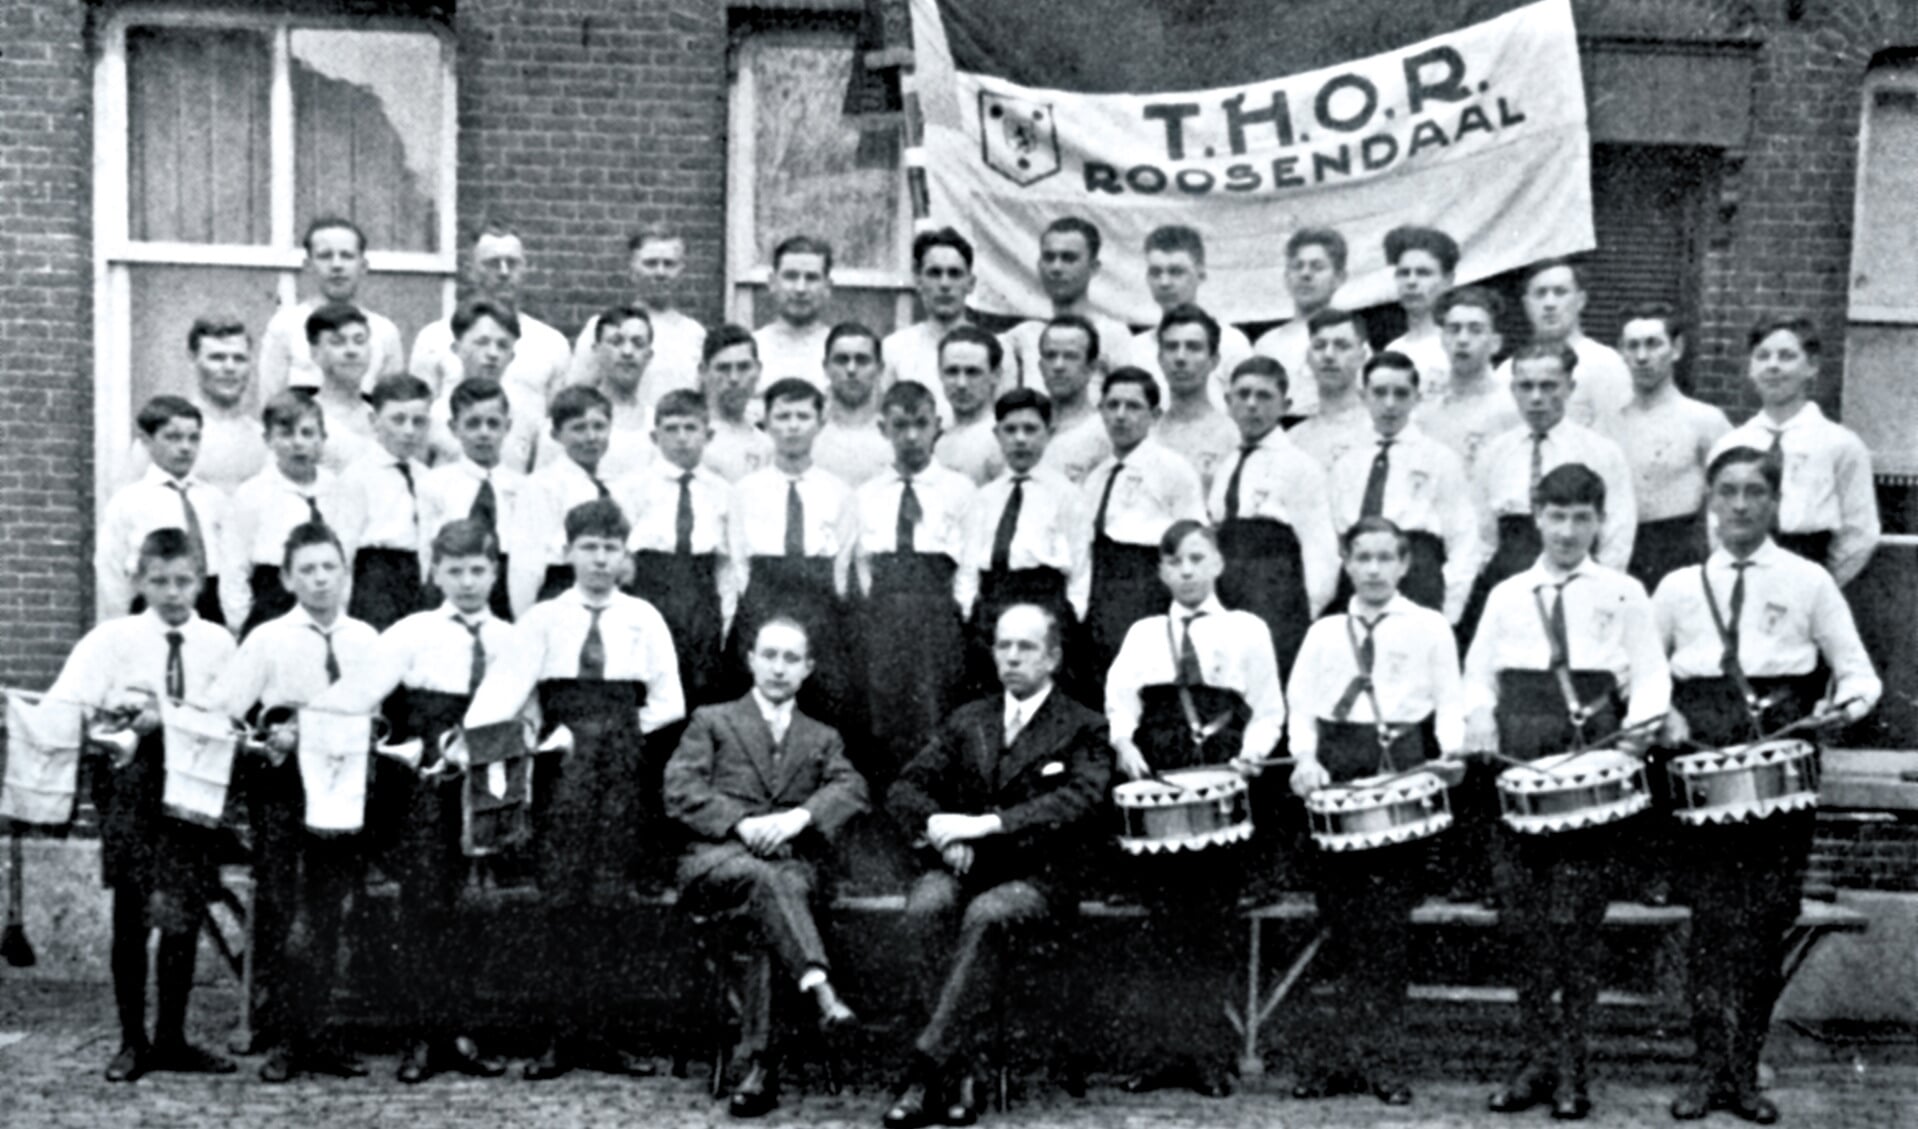 THOR in 1932 zittend links W. Jansen, gymnastiekleraar. De muzikanten op de voorgrond noemde men de 'signaalgroep'. 